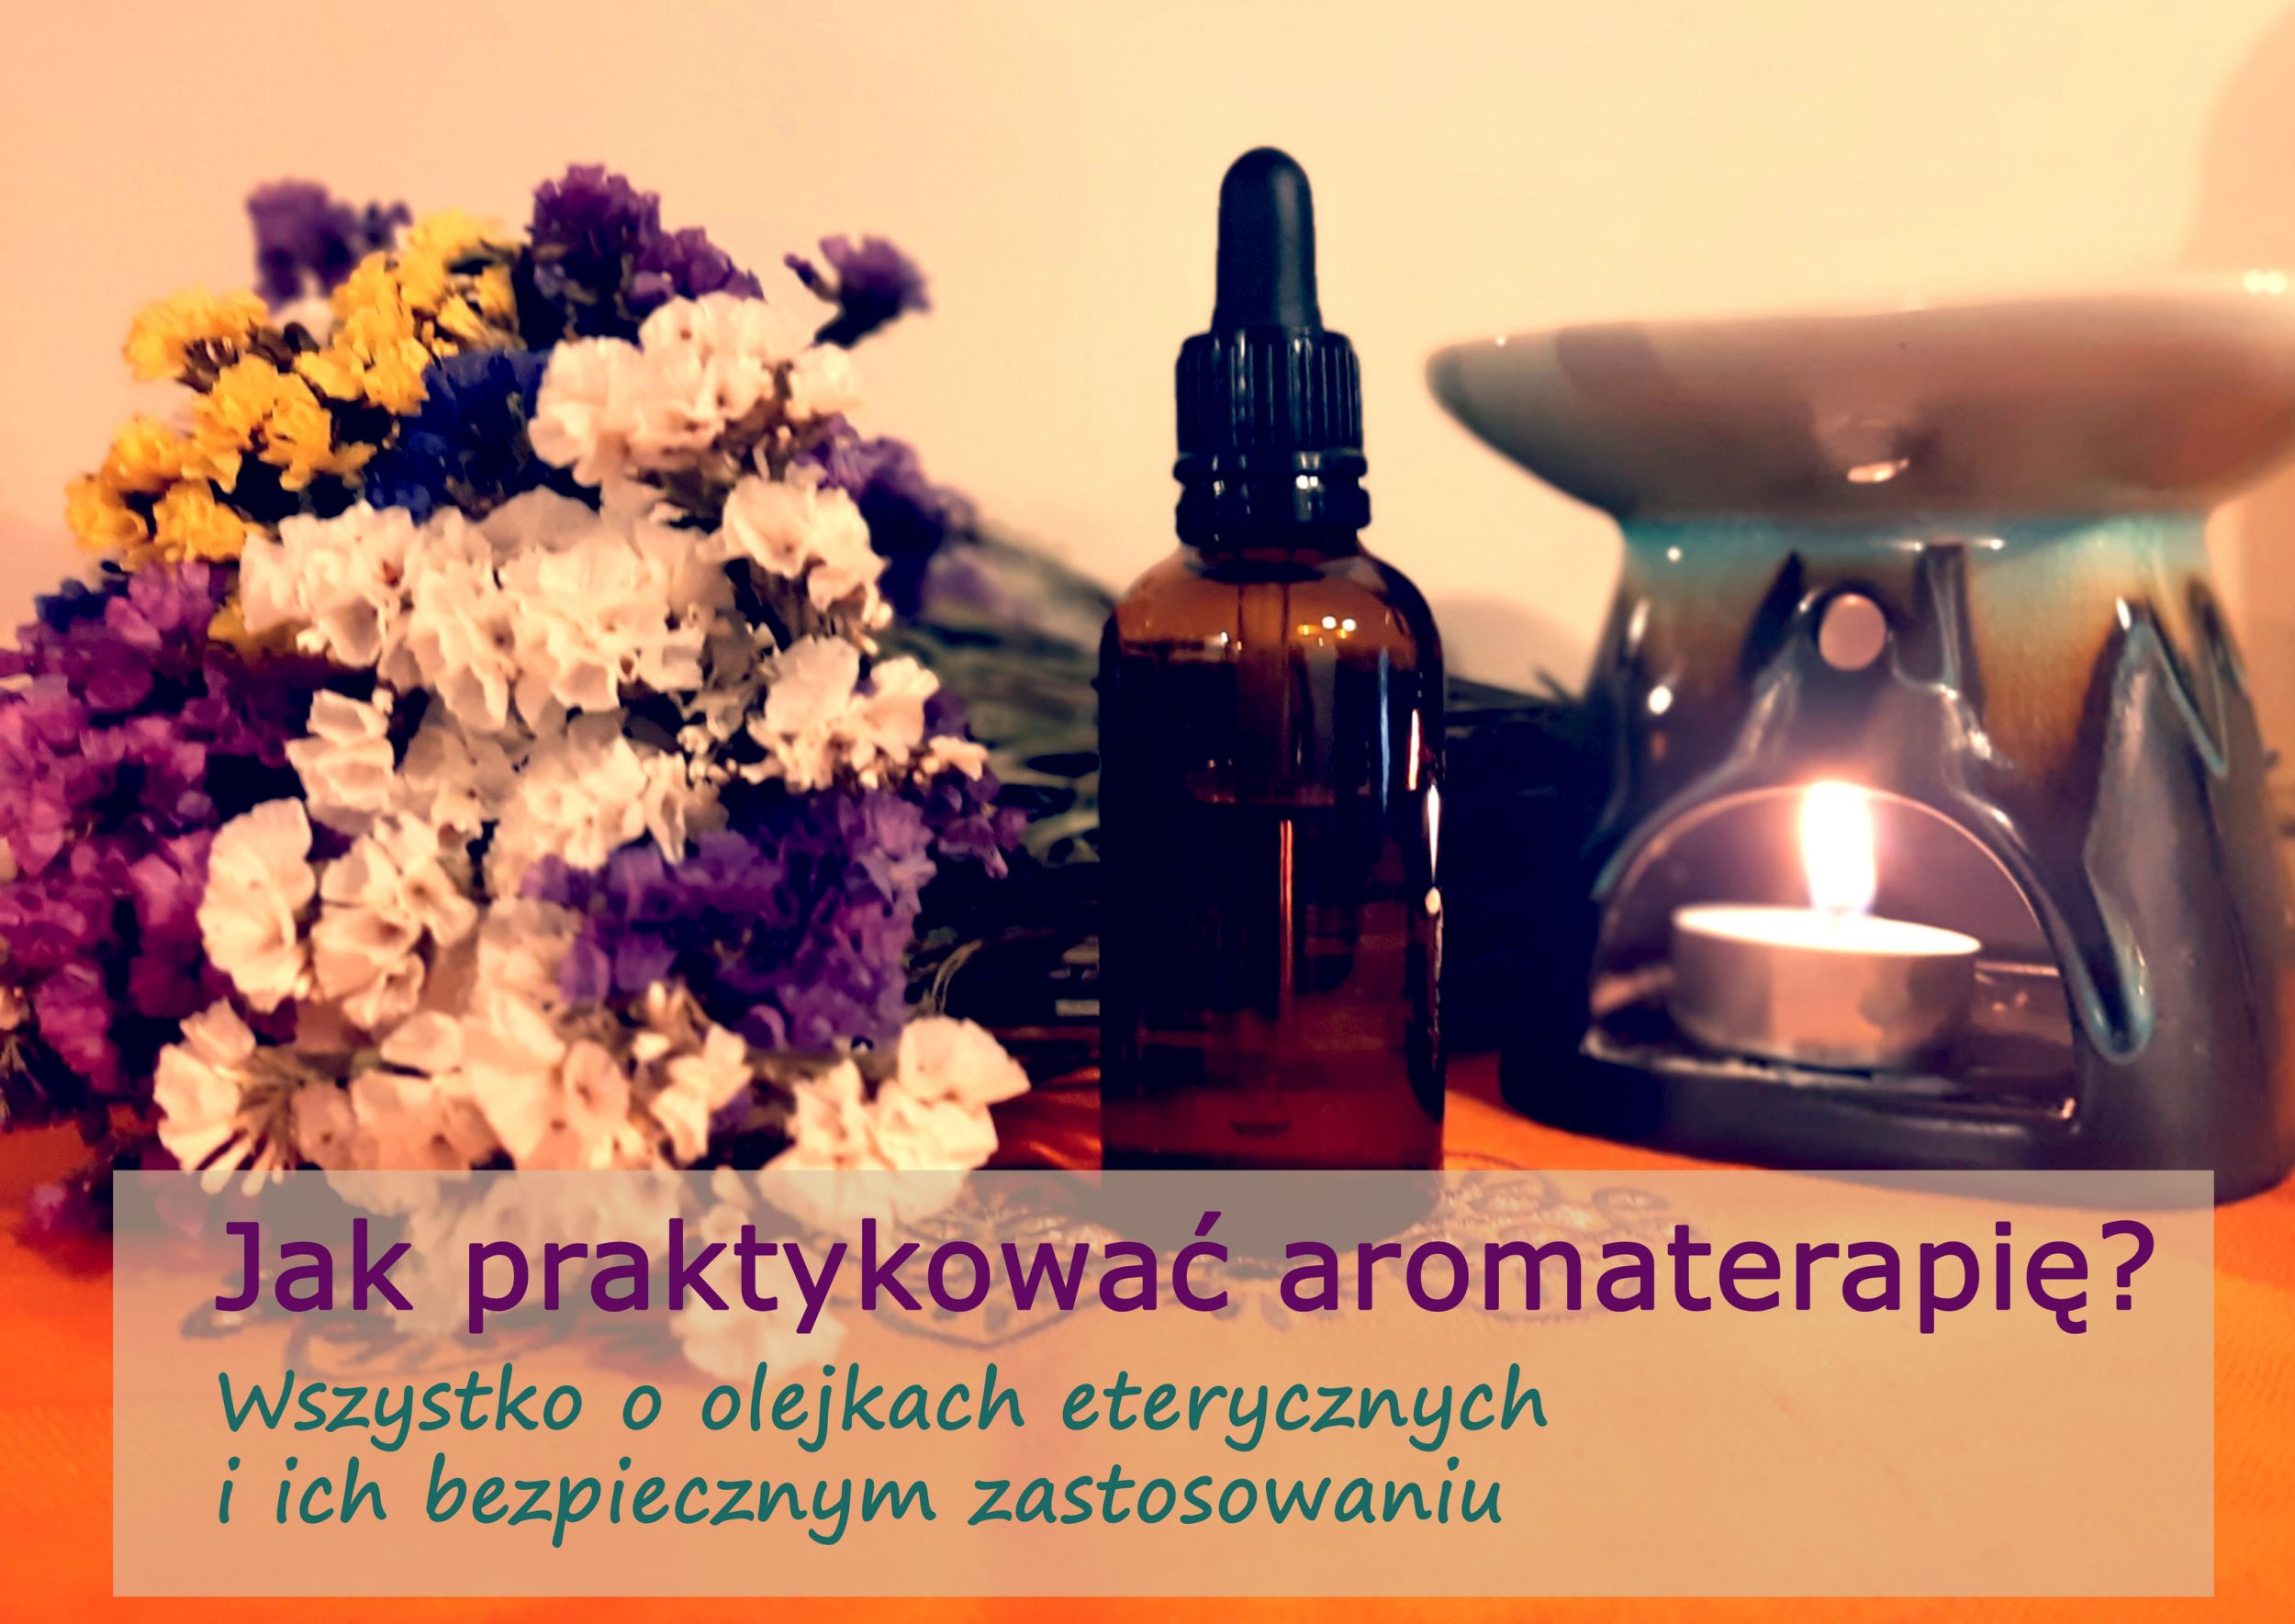 aromaterapia.jpg